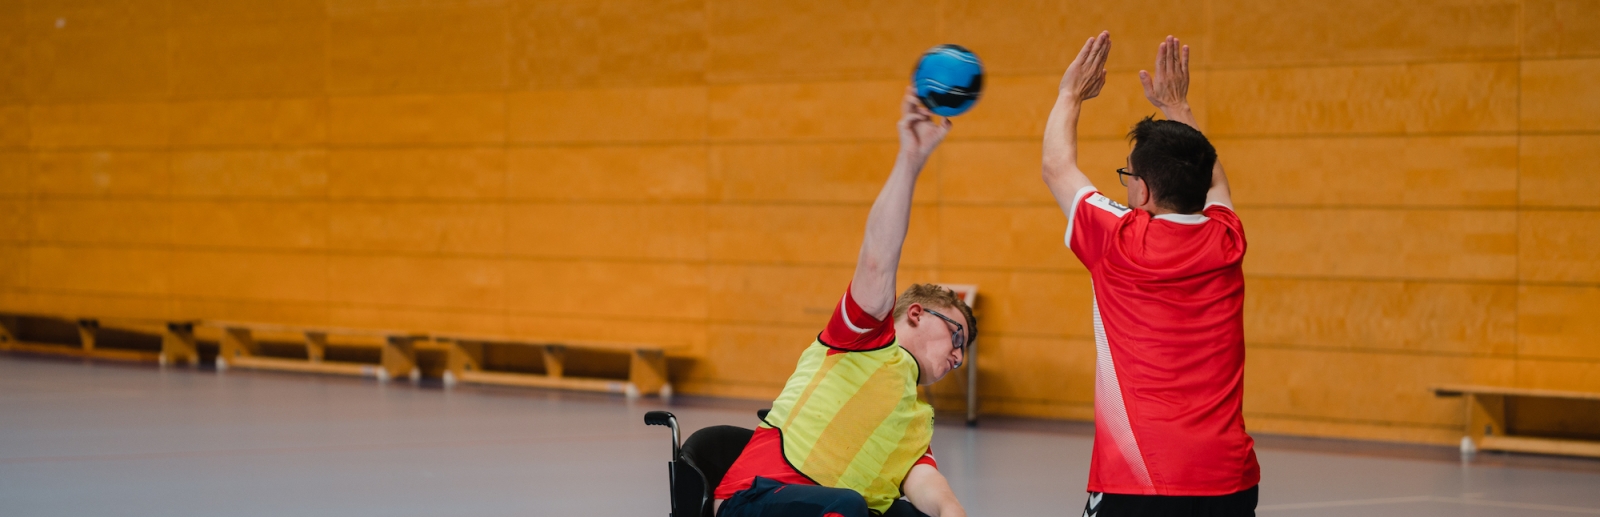 Handballspieler im Rollstuhl beim Wurf